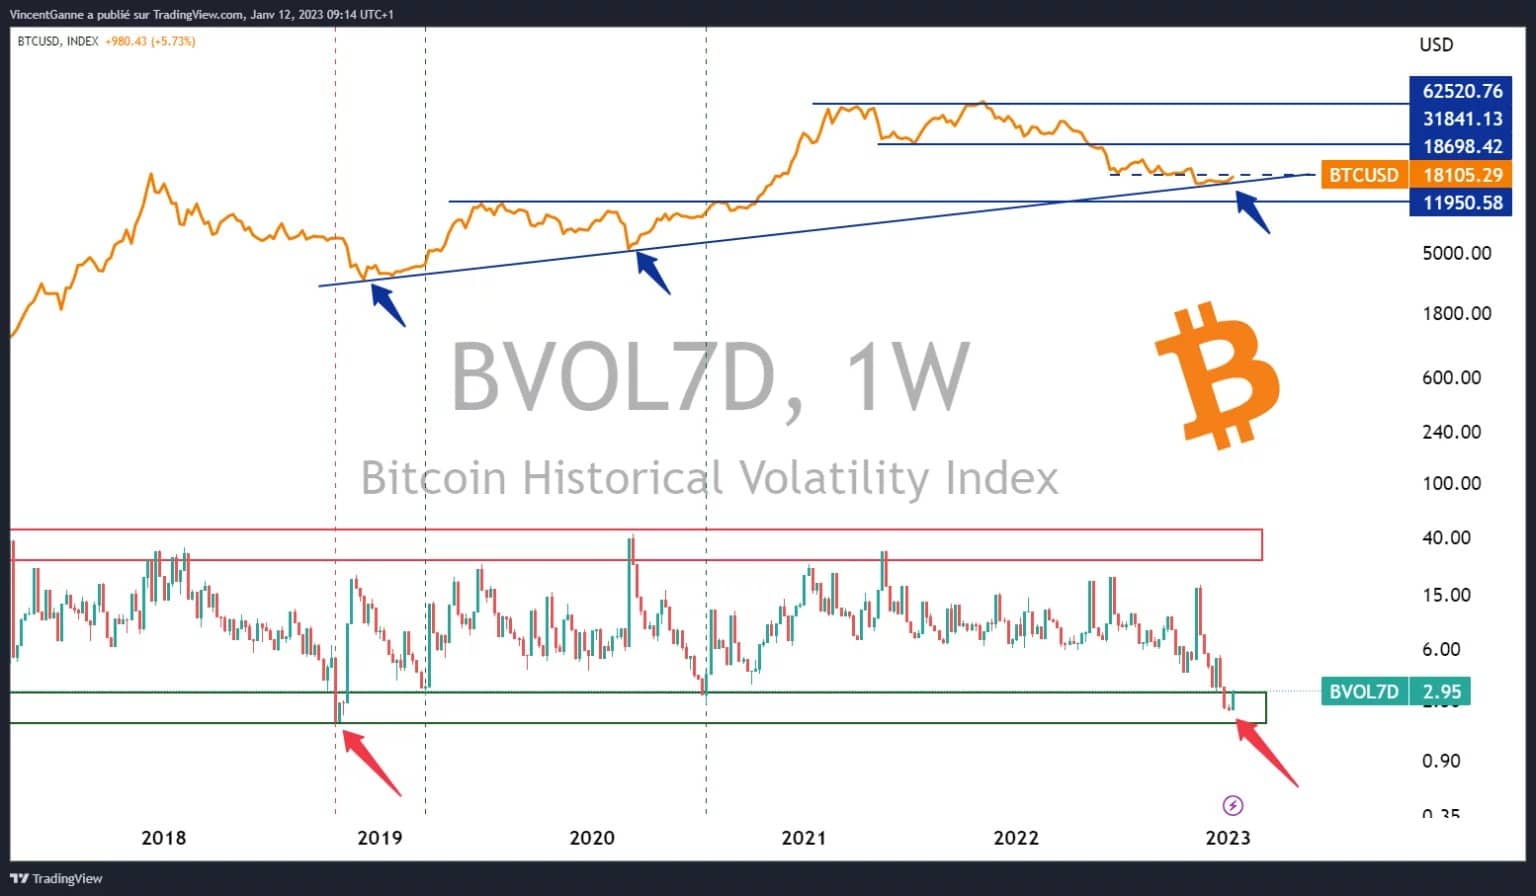 Grafiek die de wekelijkse slotkoers van bitcoin weergeeft, afgezet tegen de gerealiseerde 7-daagse volatiliteit